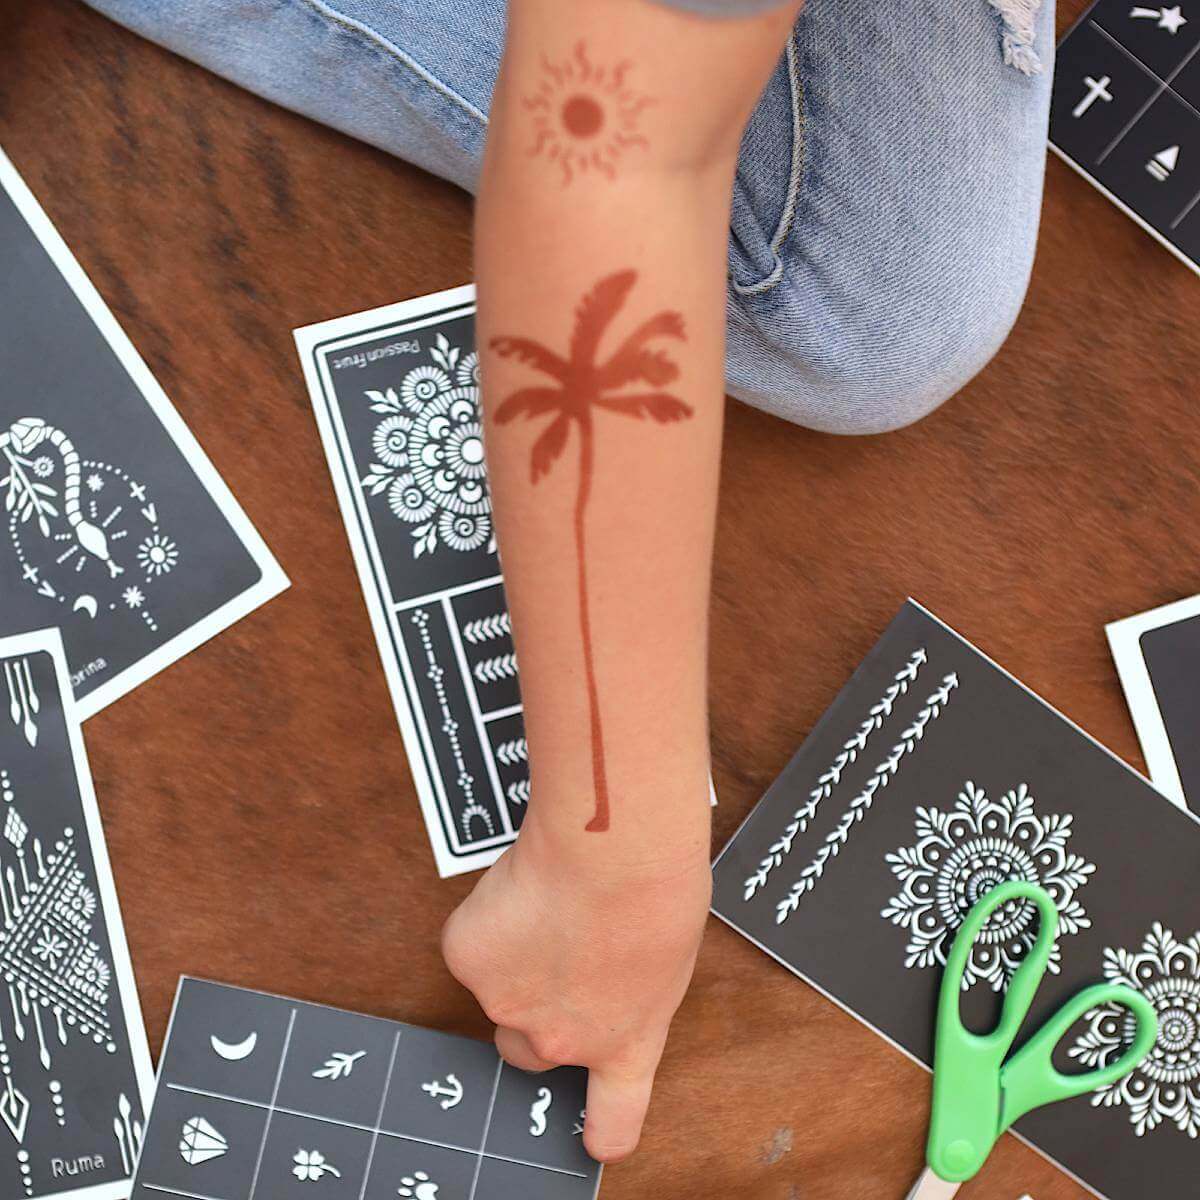 Palma - henna temporary tattoo of palm tree on forearm